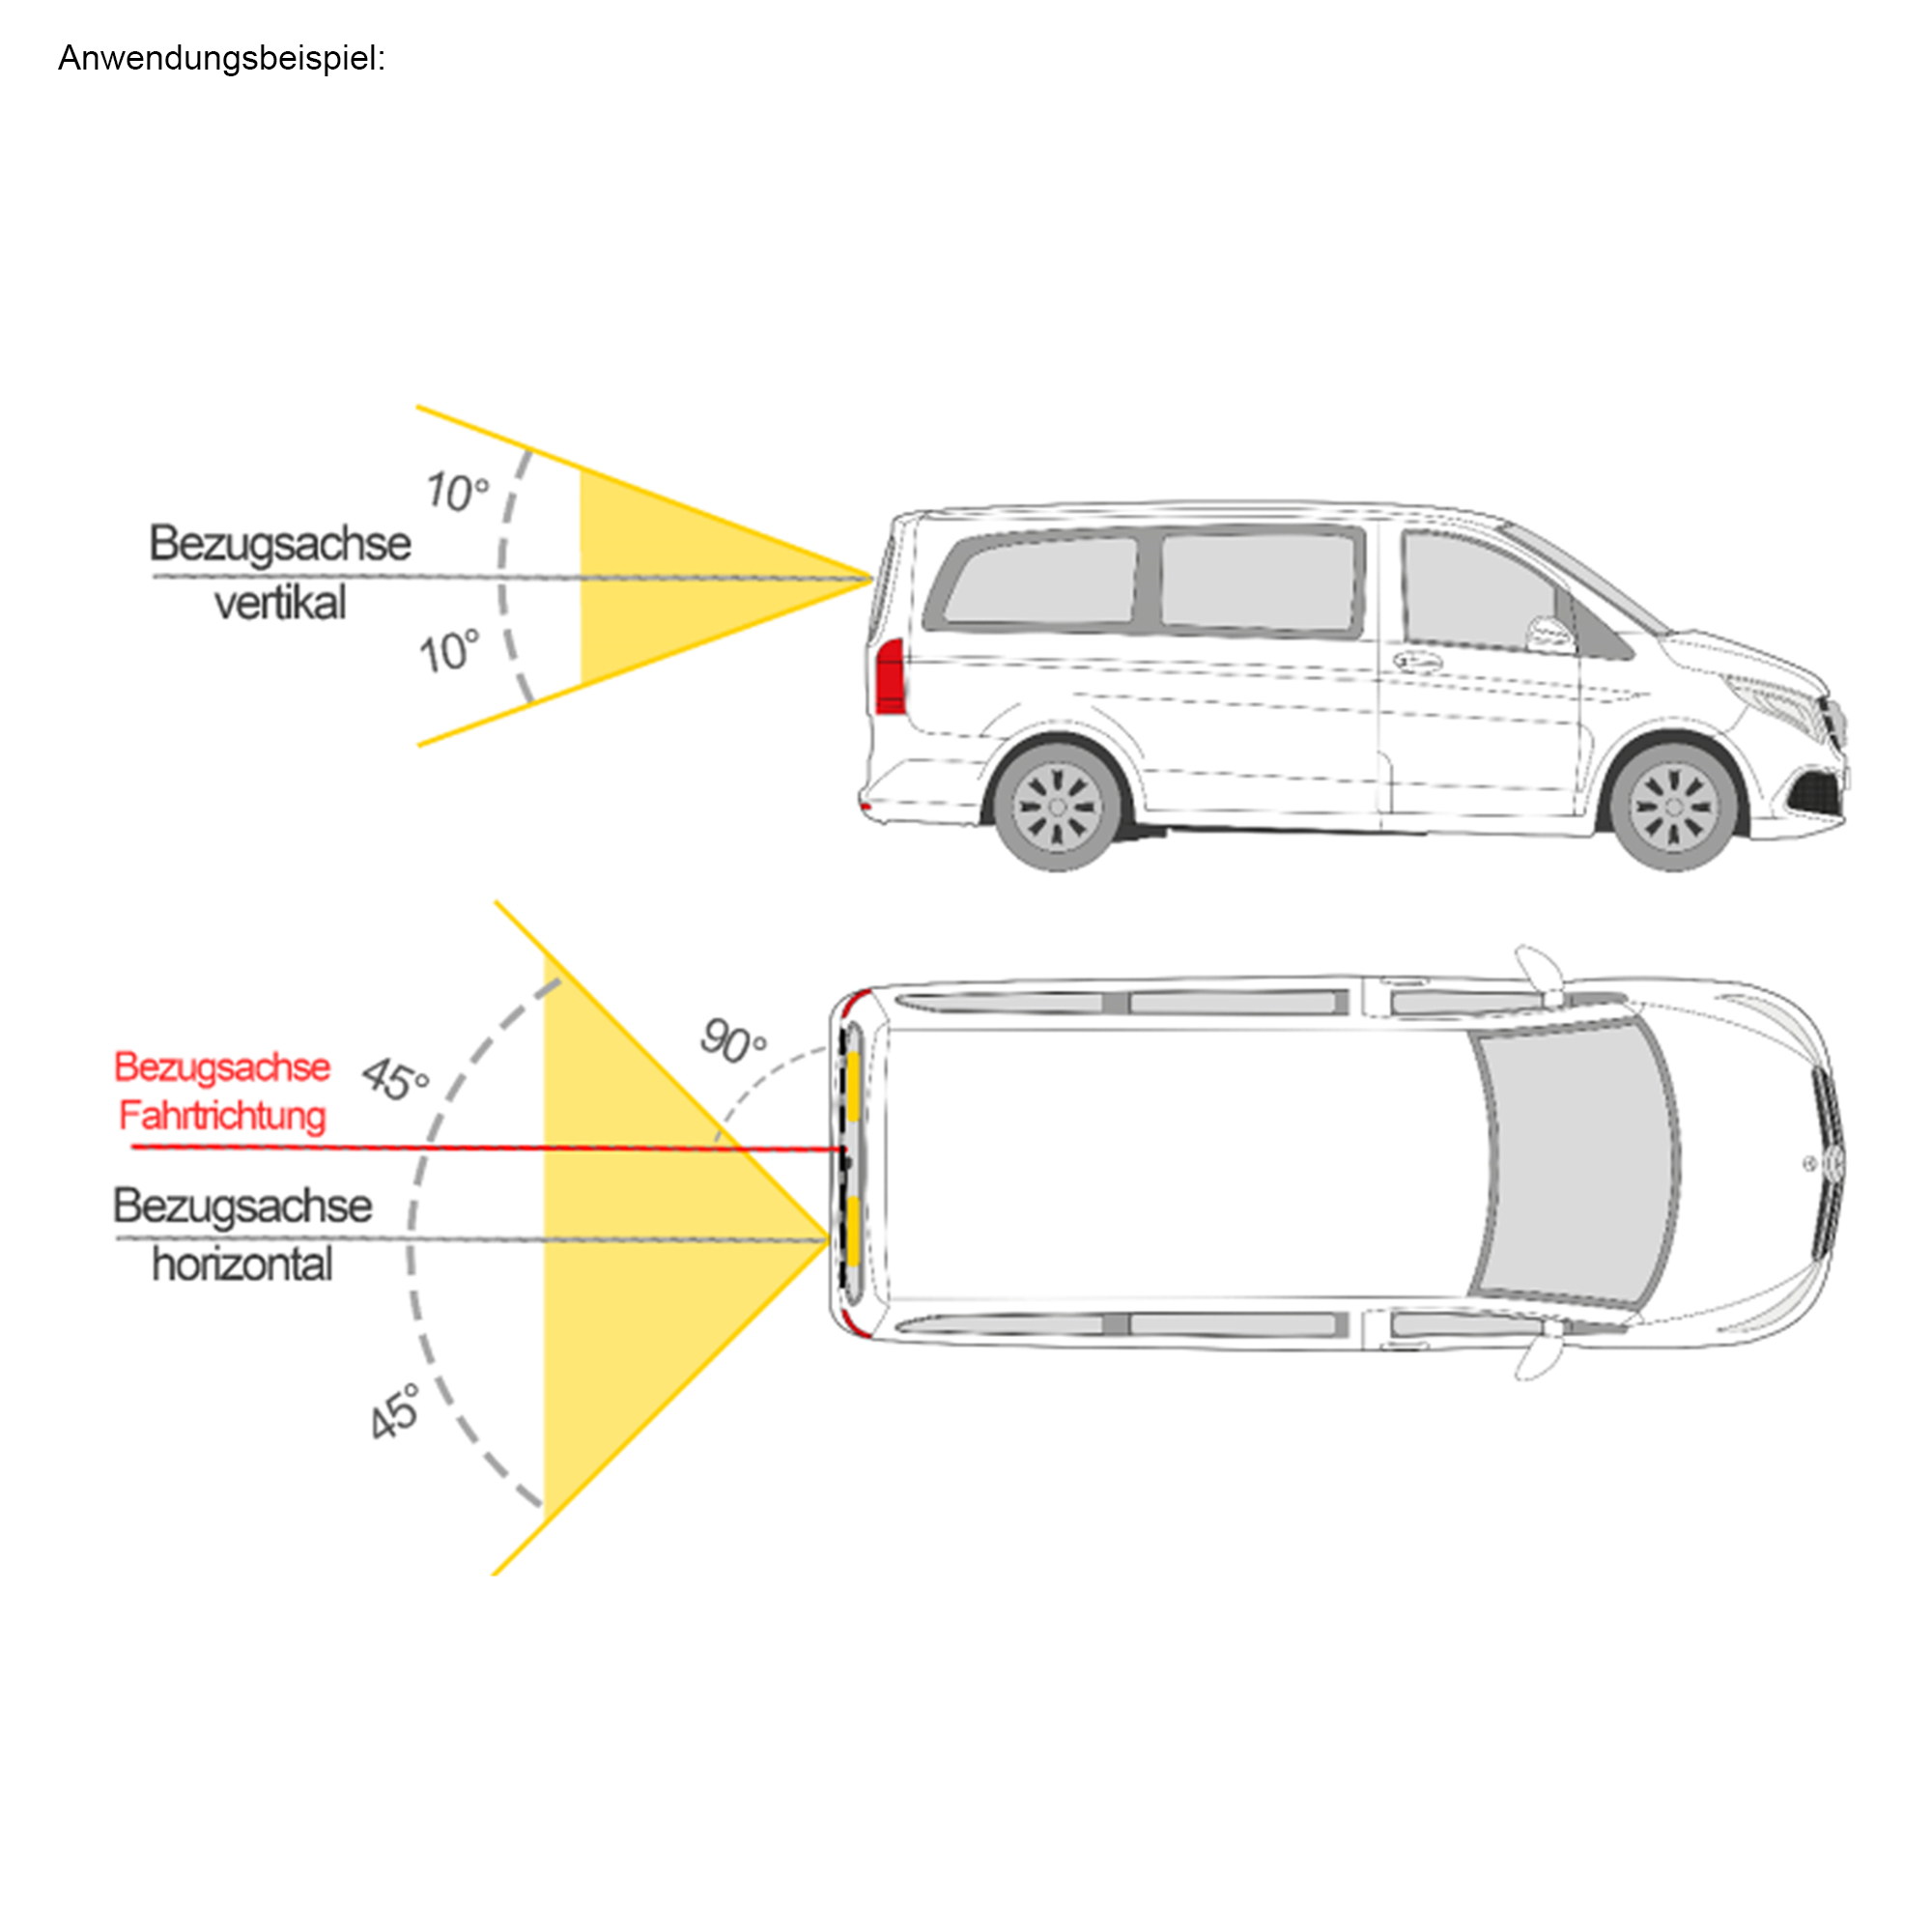 PROFLASH-TA20 - zulässig für alle Fahrzeuge, Warnleuchten §53a Abs. 1-3  STVZO, Kennleuchten